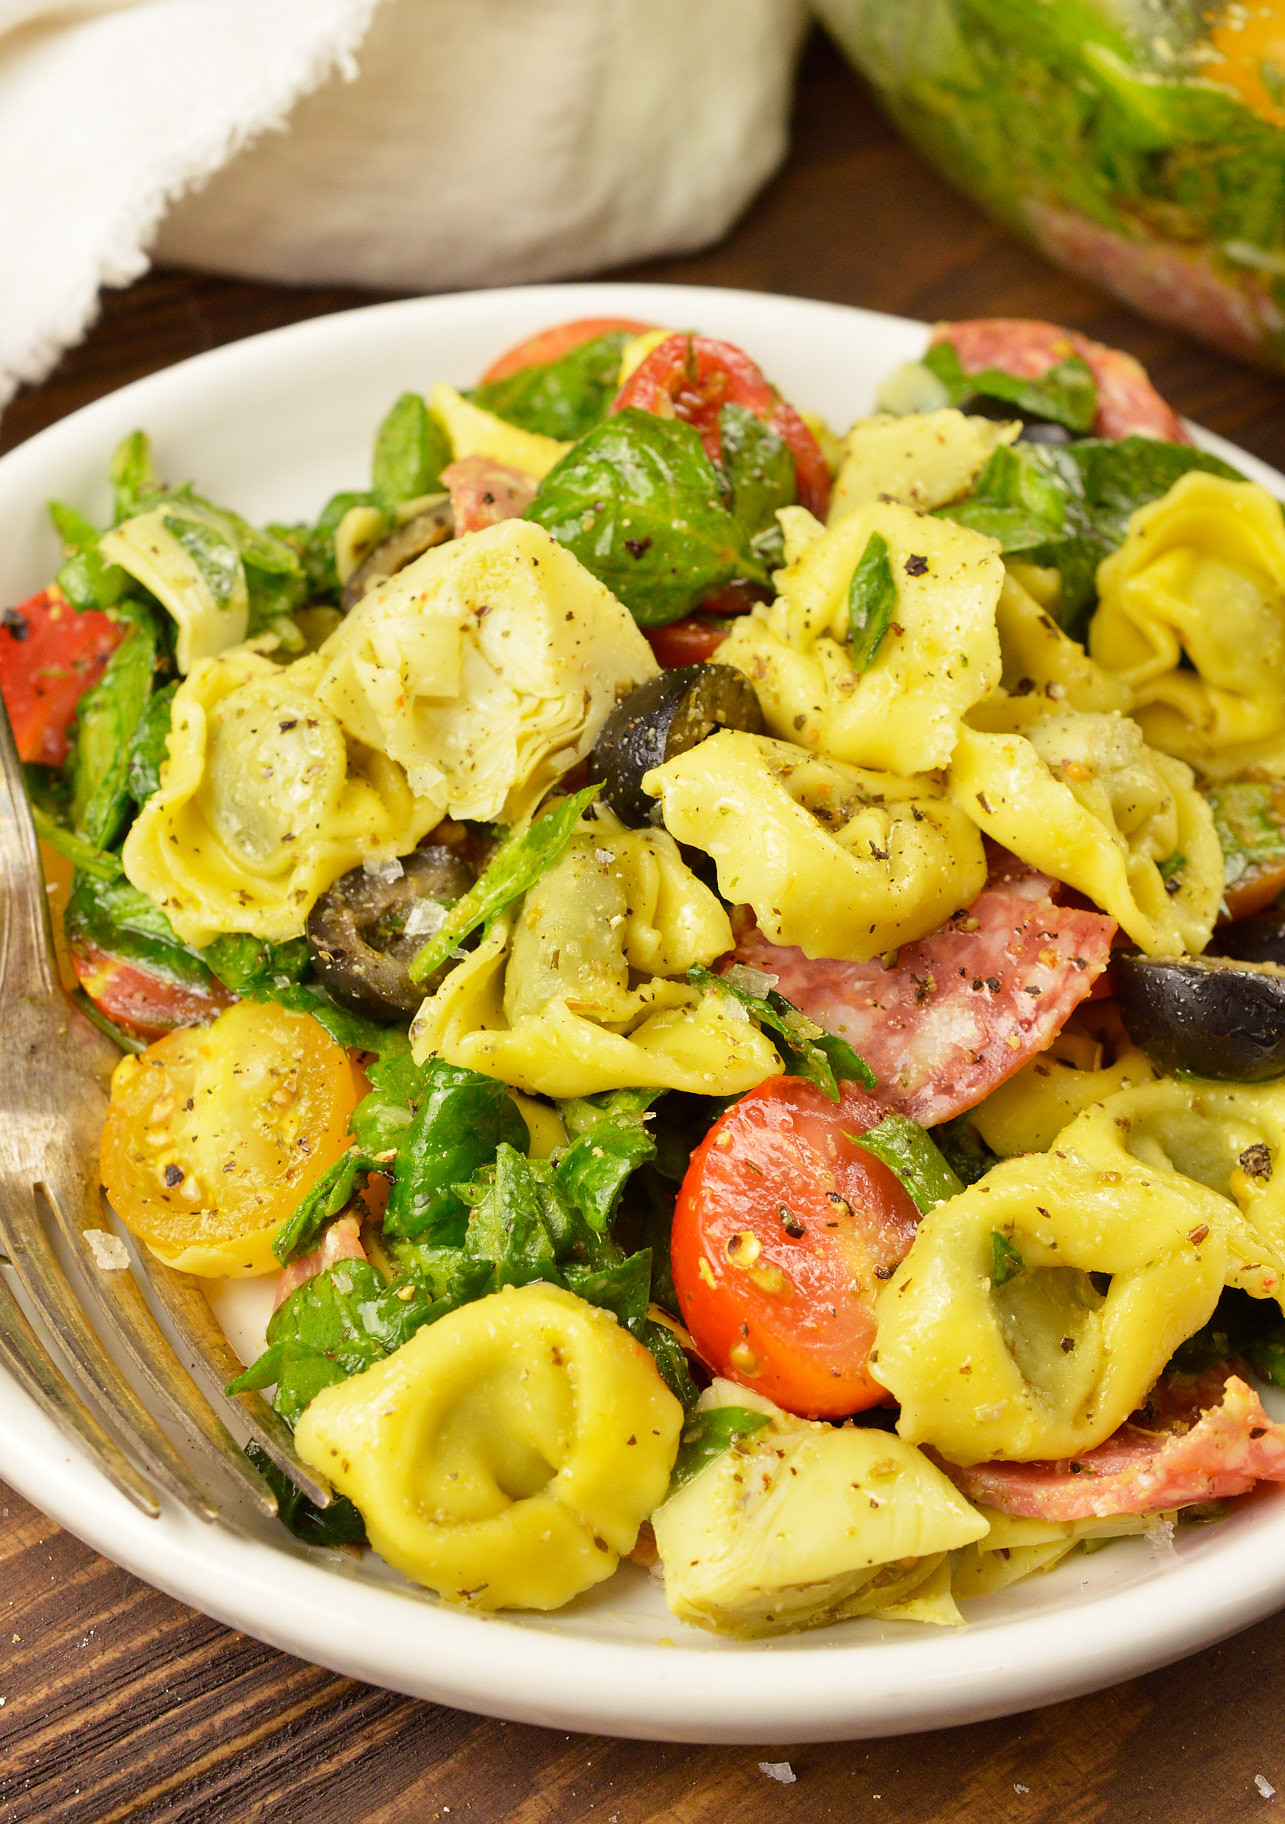 Top 15 Most Popular Italian Food Recipes